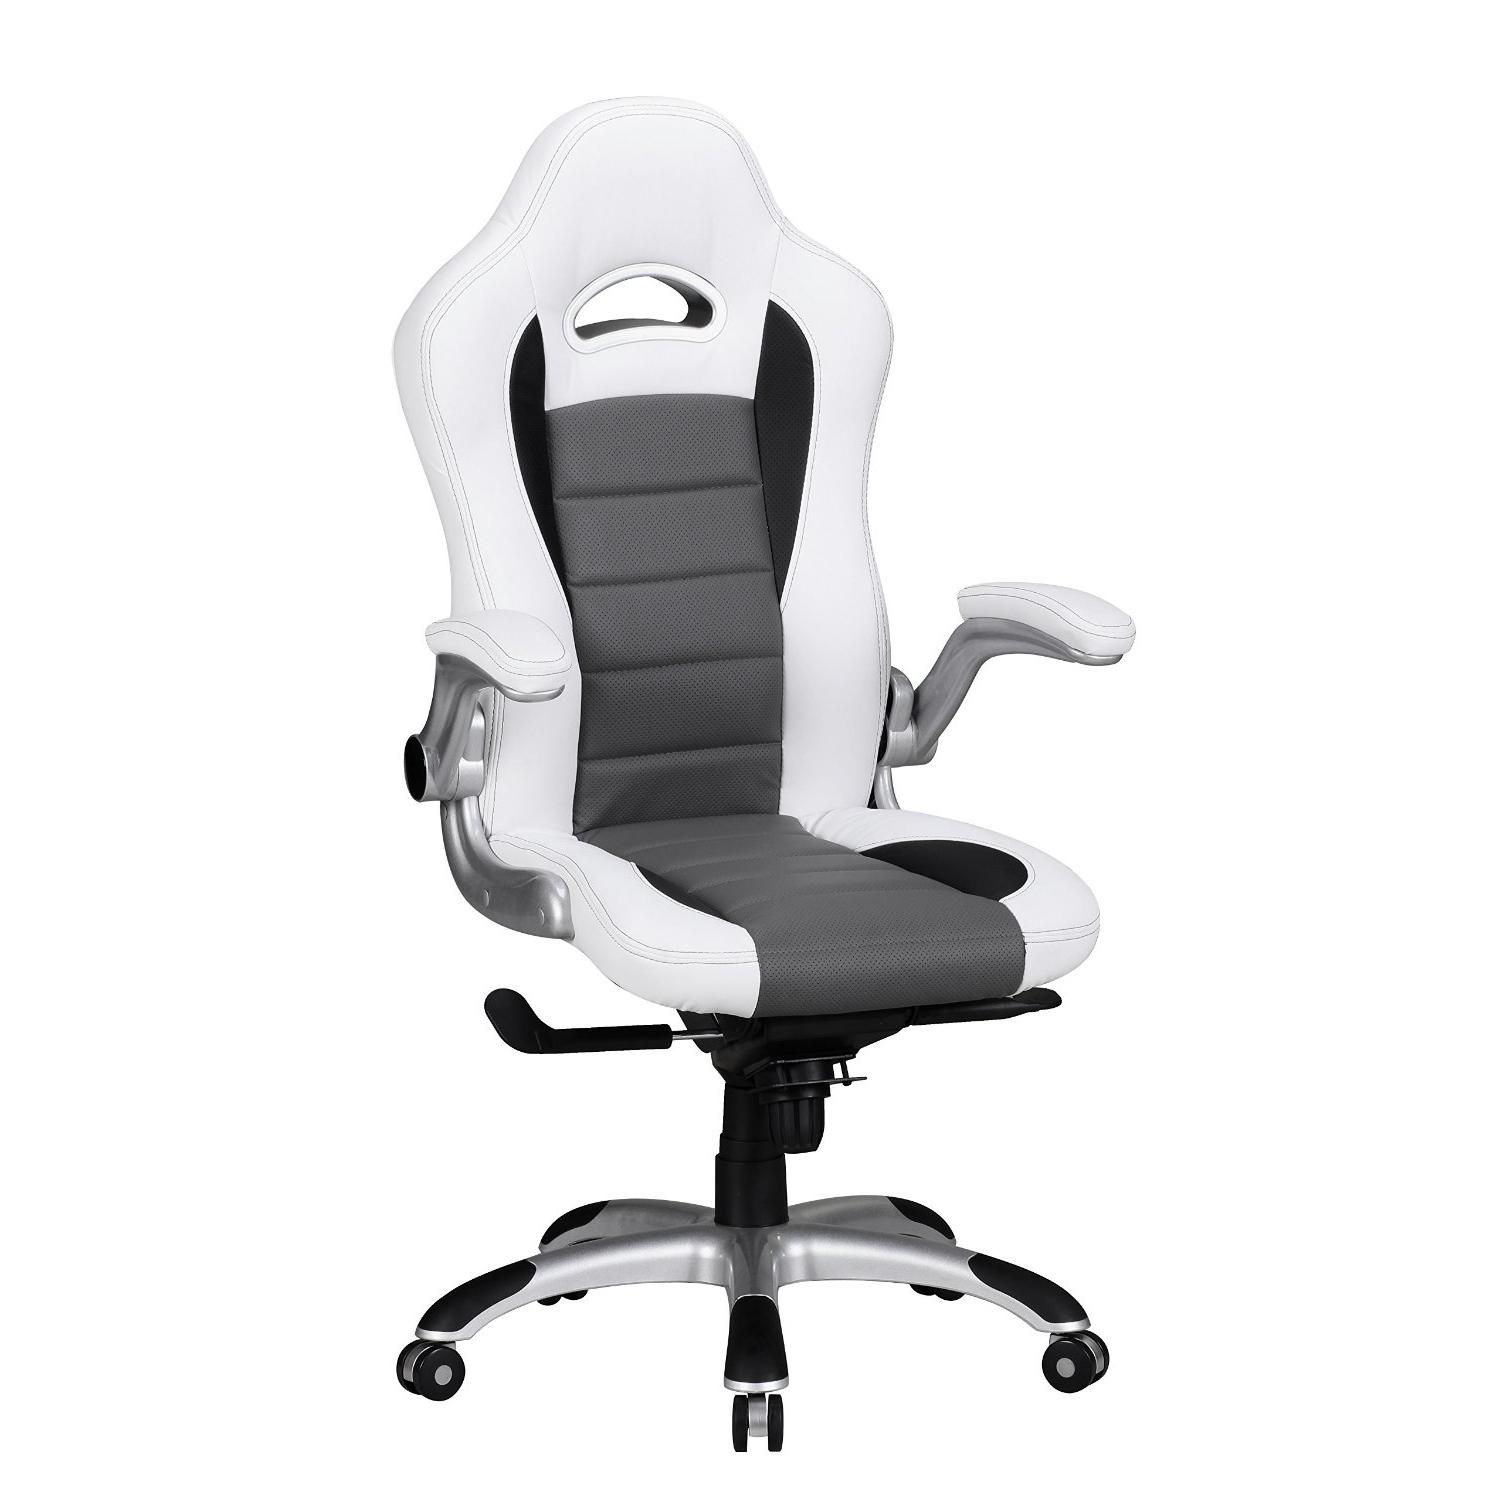 Bürostuhl NORIS, im schönen Gaming-Design, Lederbezug, für die professionelle 8h-Nutzung, Farbe Weiß